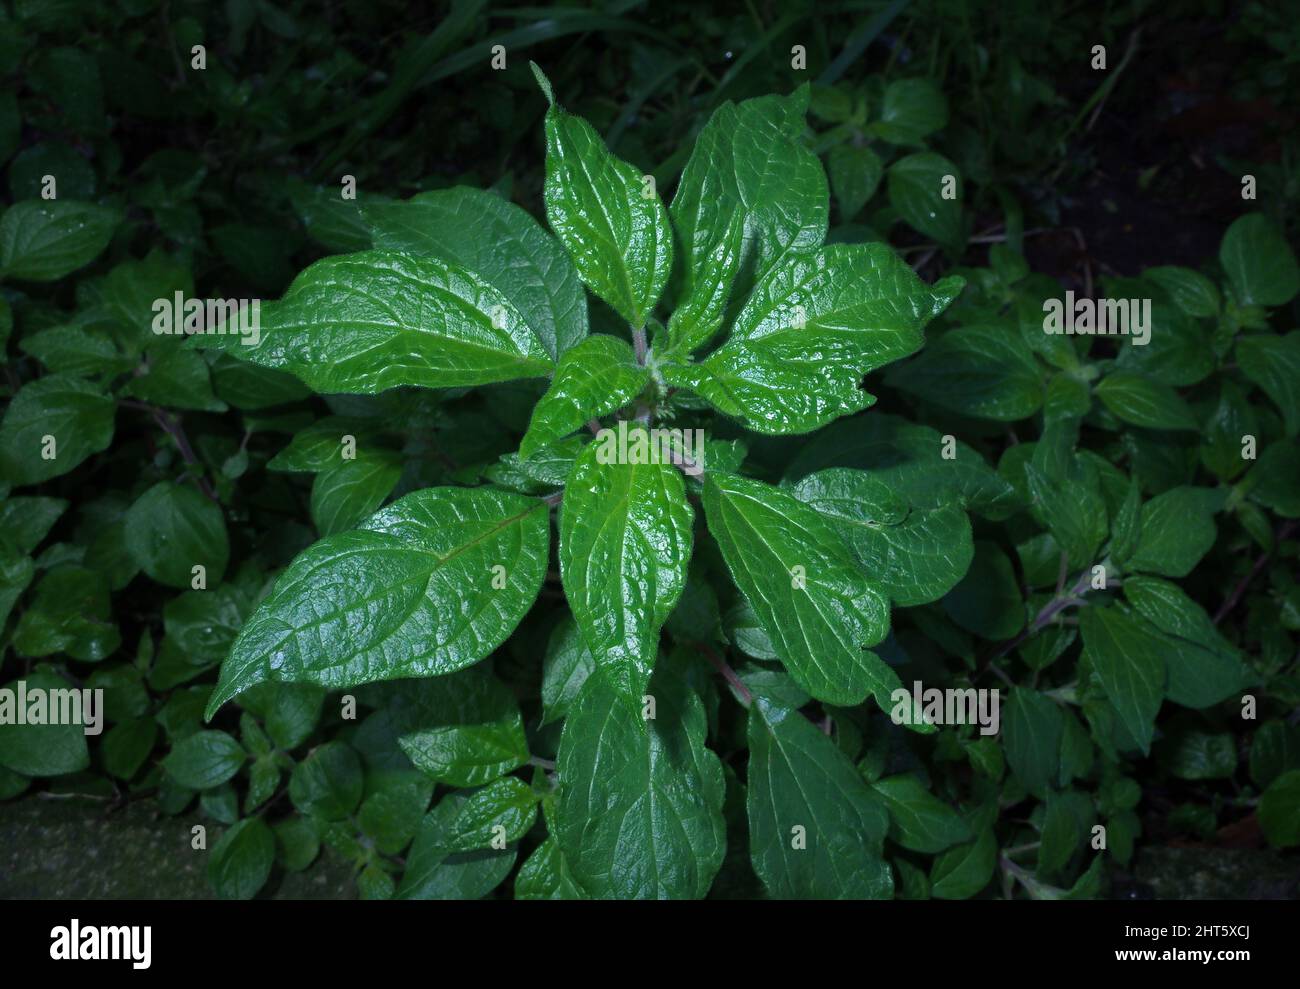 Pellitory (parietaria officinalis) in nature Stock Photo